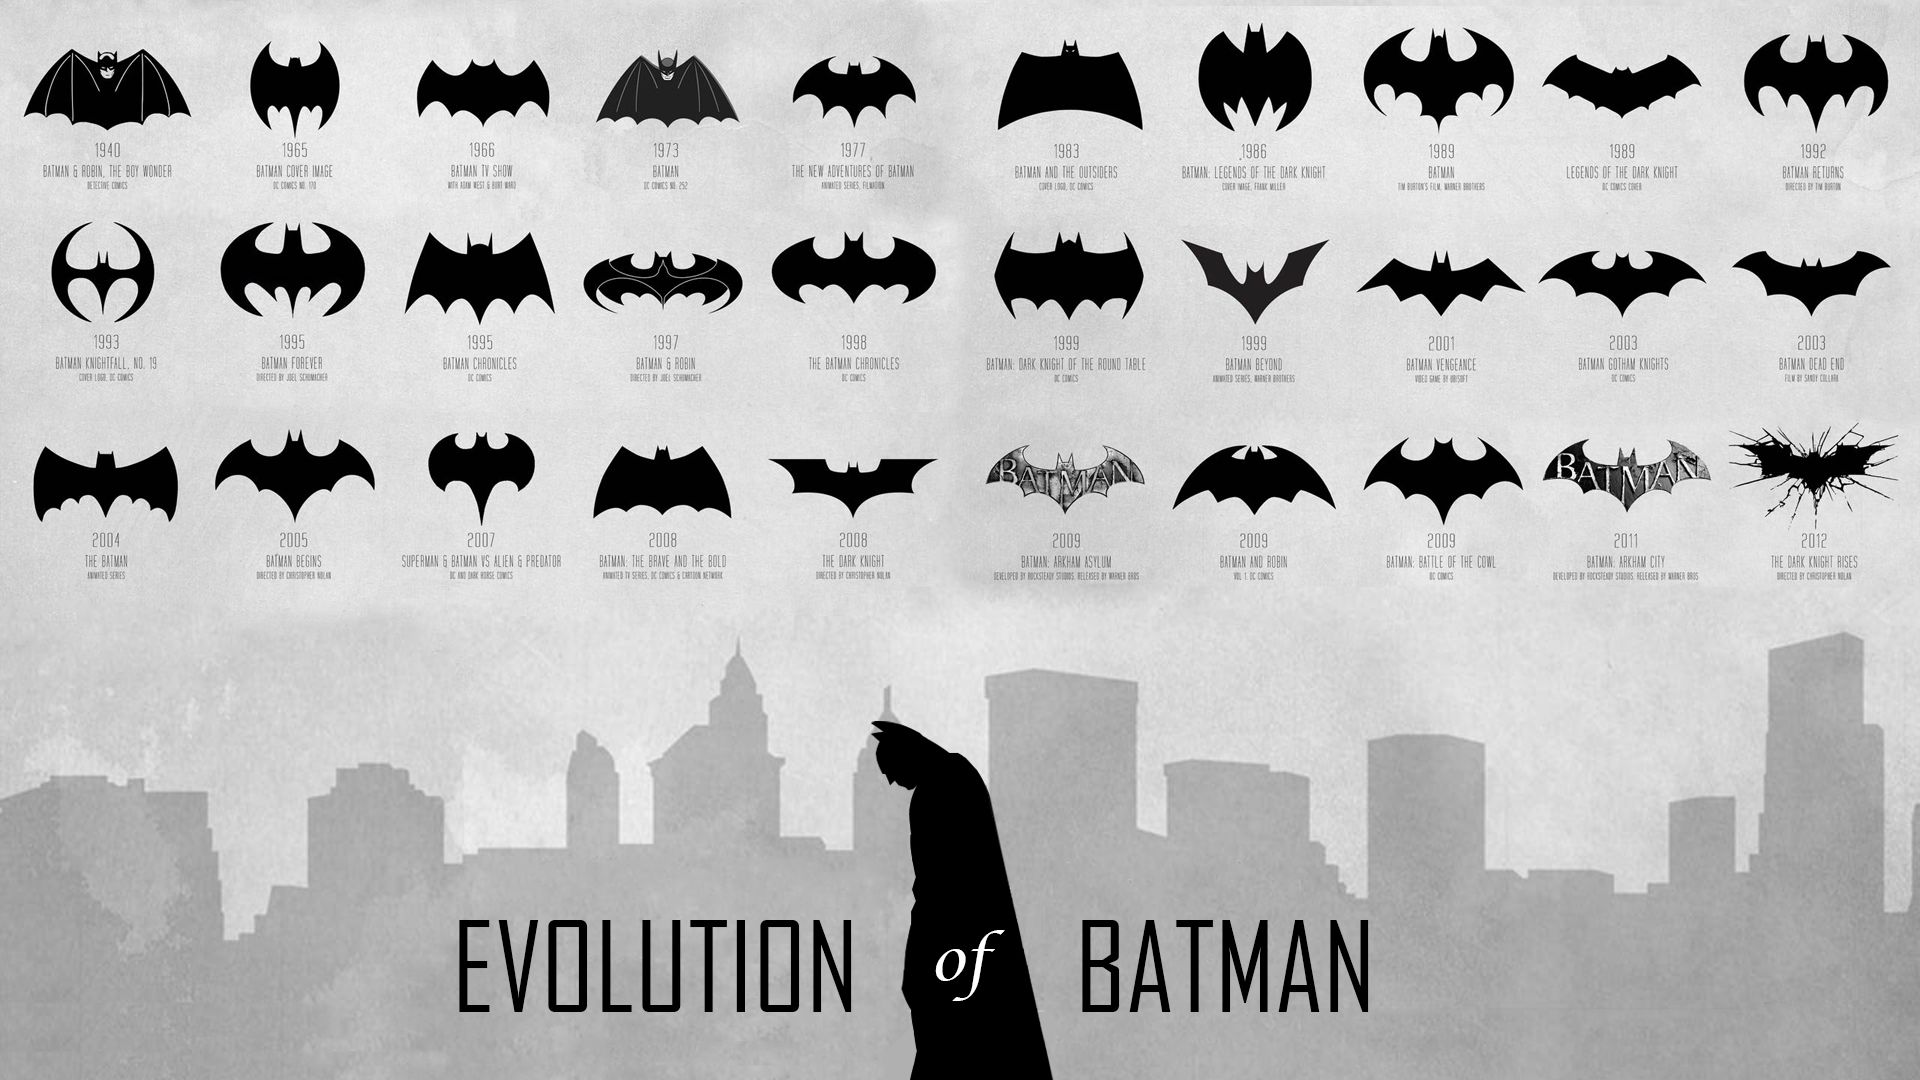 Evolution Of Batman HD Wallpaper FullHDwpp Full